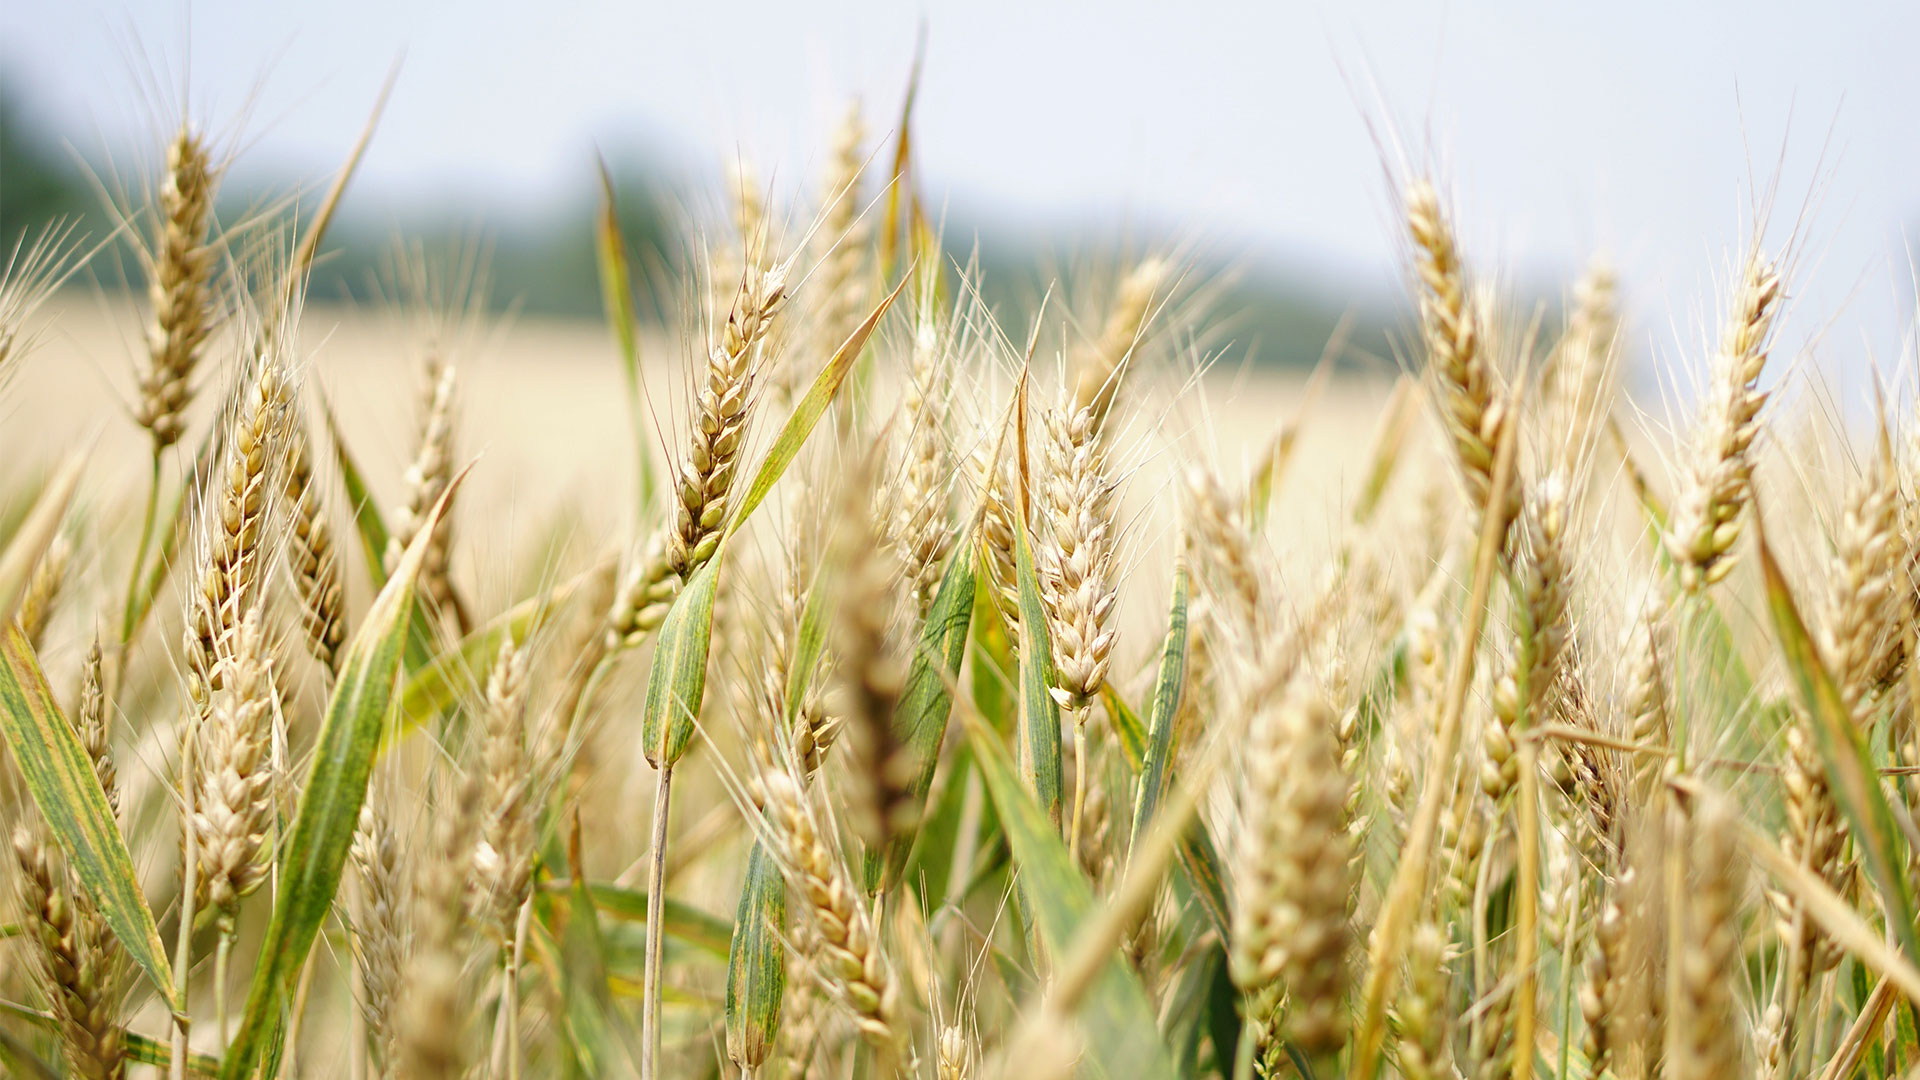 Une image montrant un champs de blé au soleil